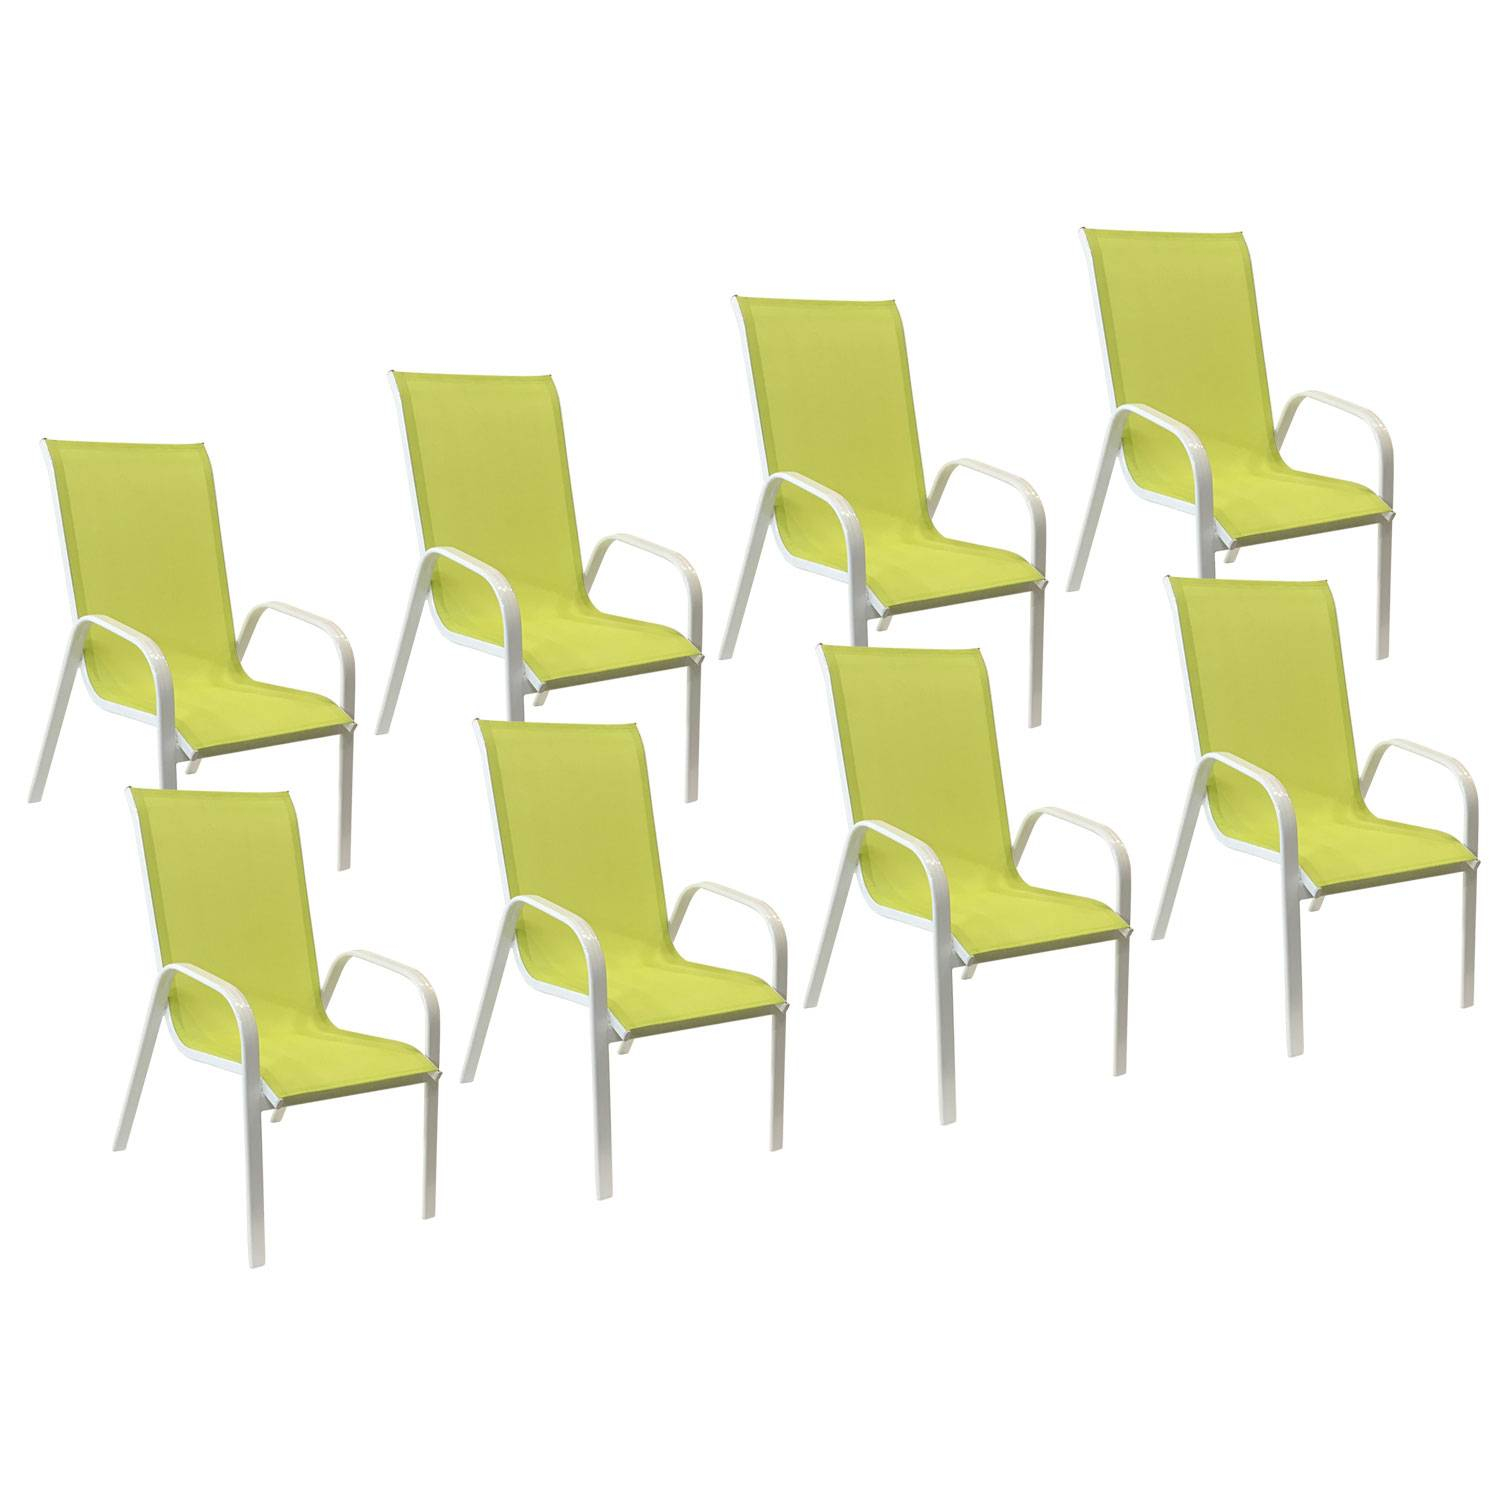 Lot de 8 chaises MARBELLA en textilène vert - aluminium blanc